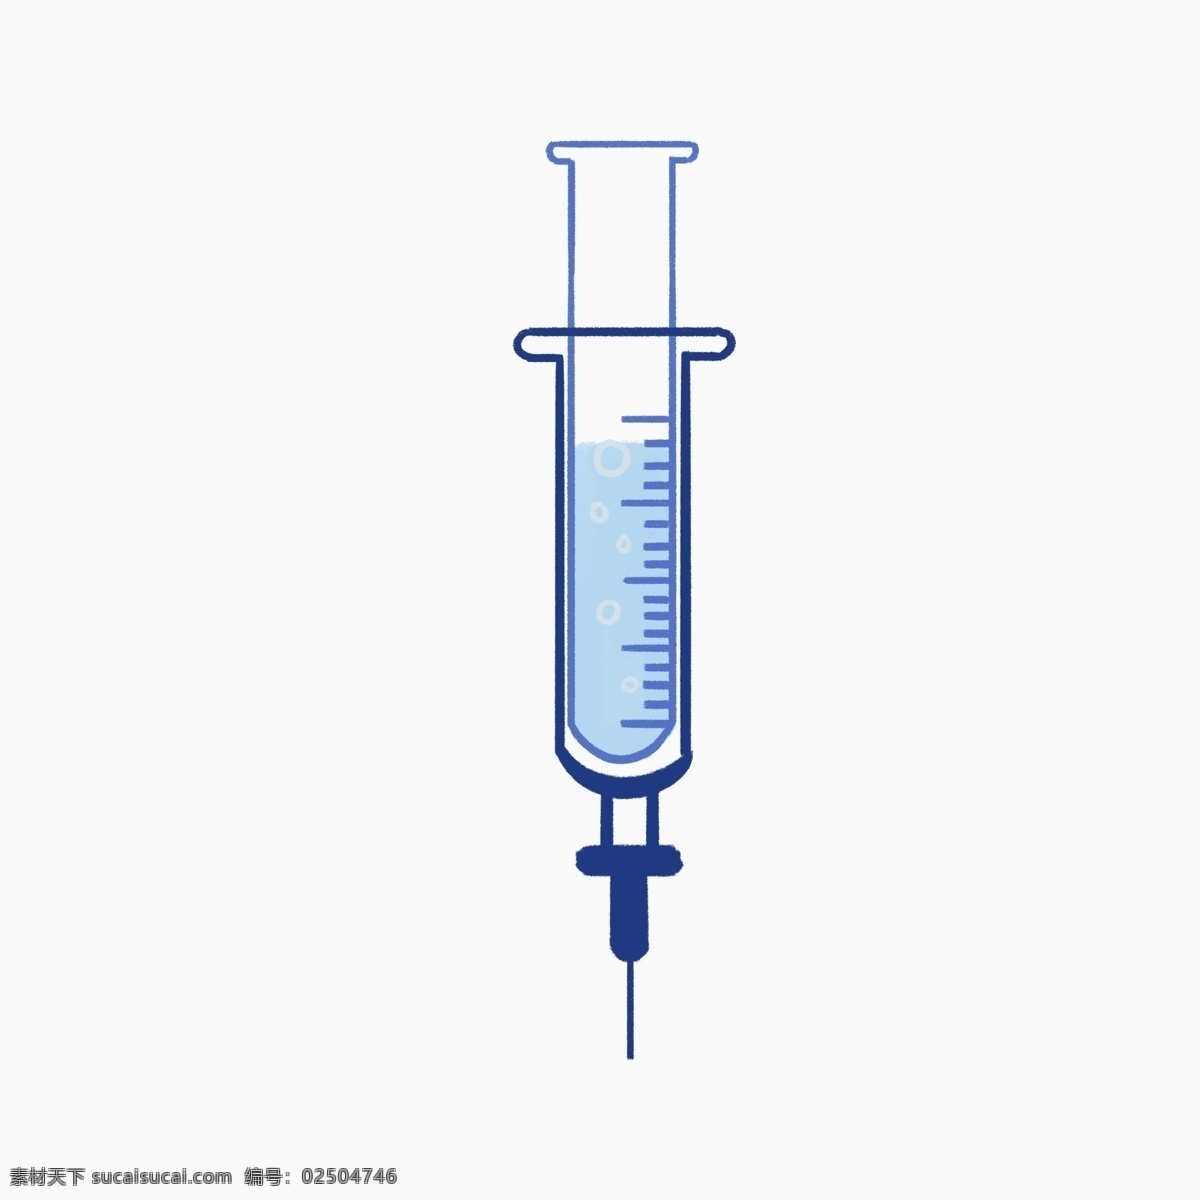 卡通 手绘 医疗器械 针筒 针管 设备 原创 元素 图案 可爱 医院 蓝色